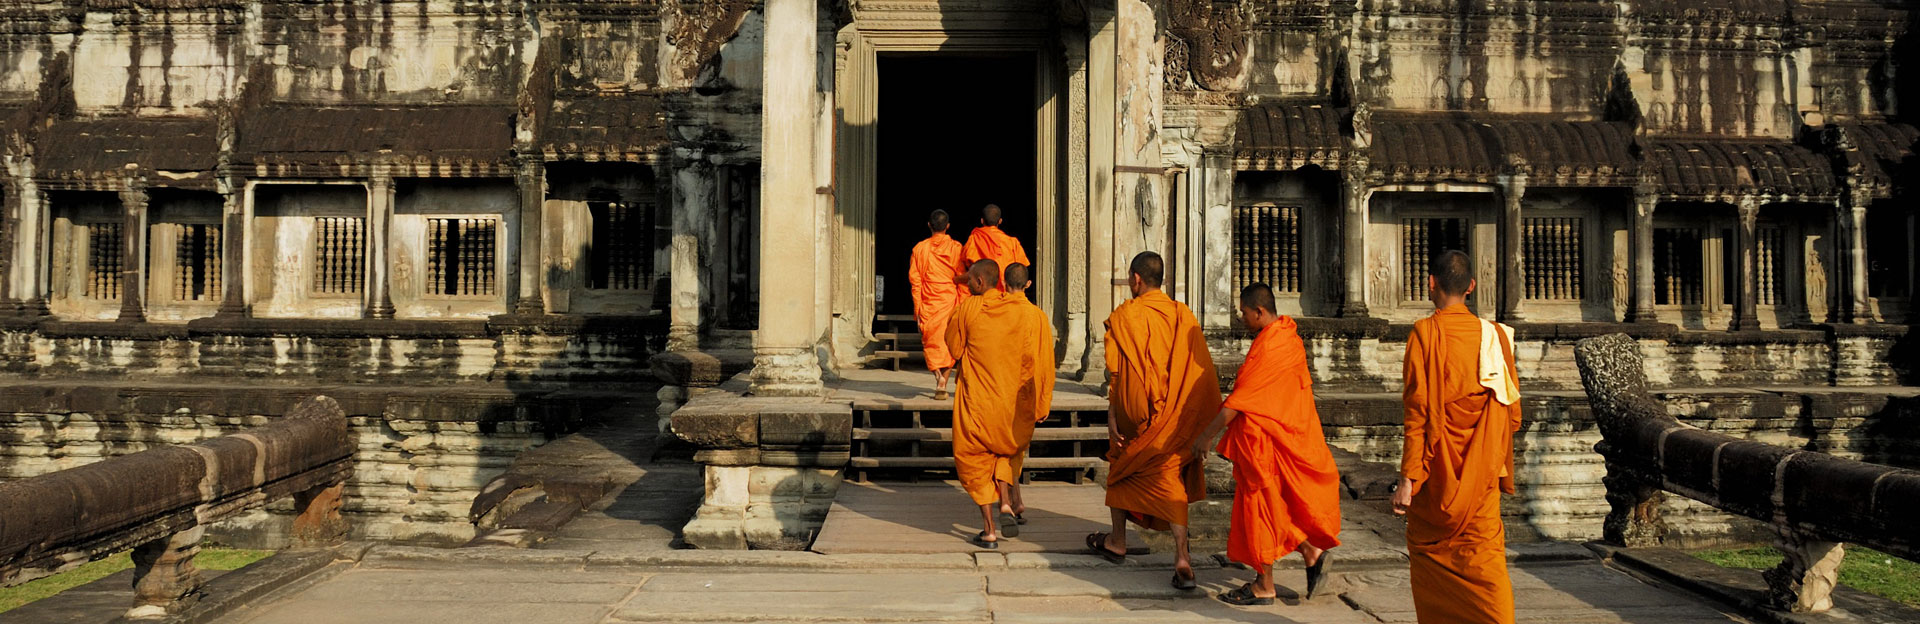 柬埔寨、老挝连线之旅